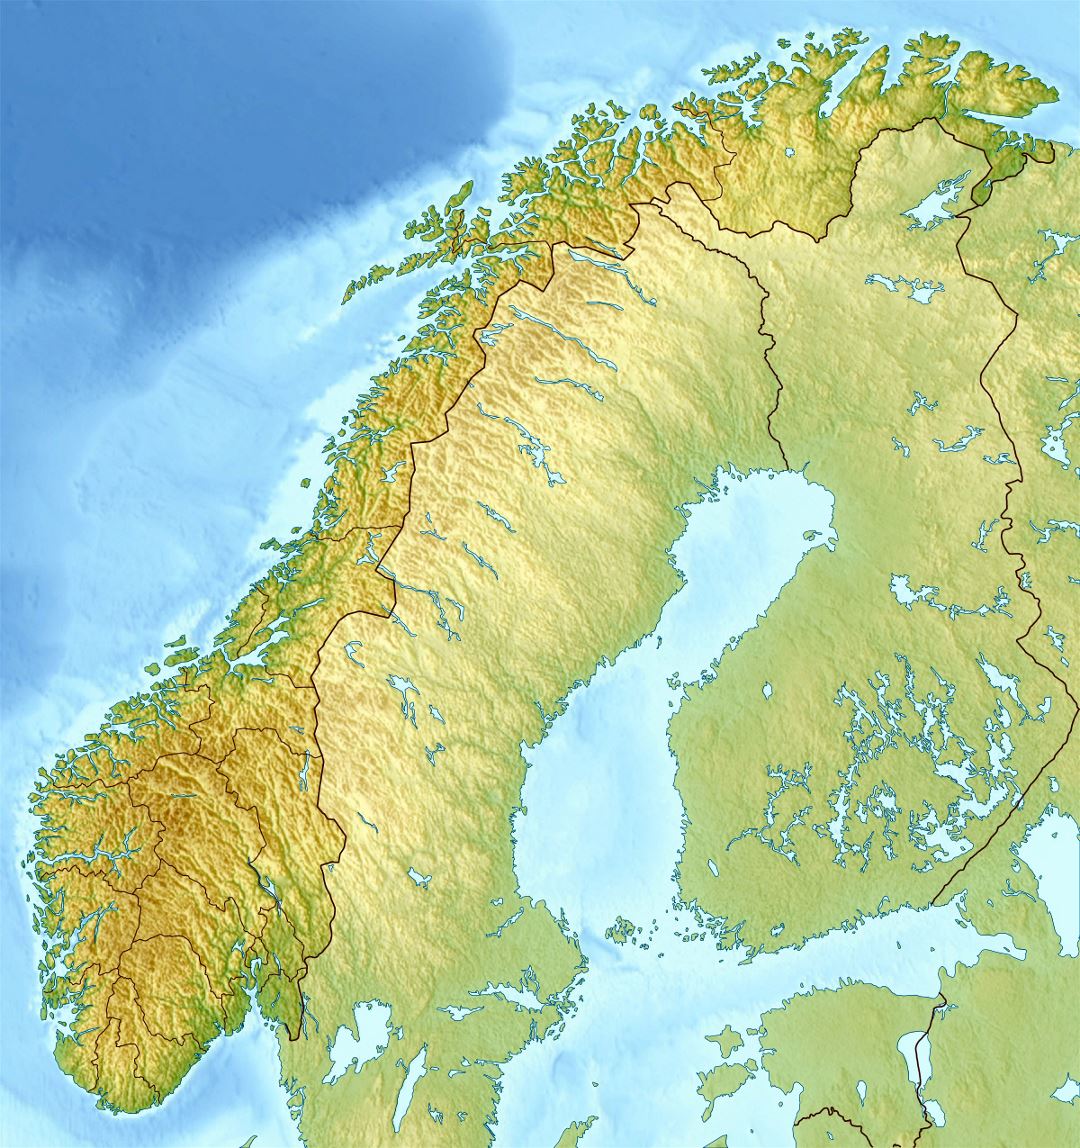 Detallado mapa relieve de Noruega